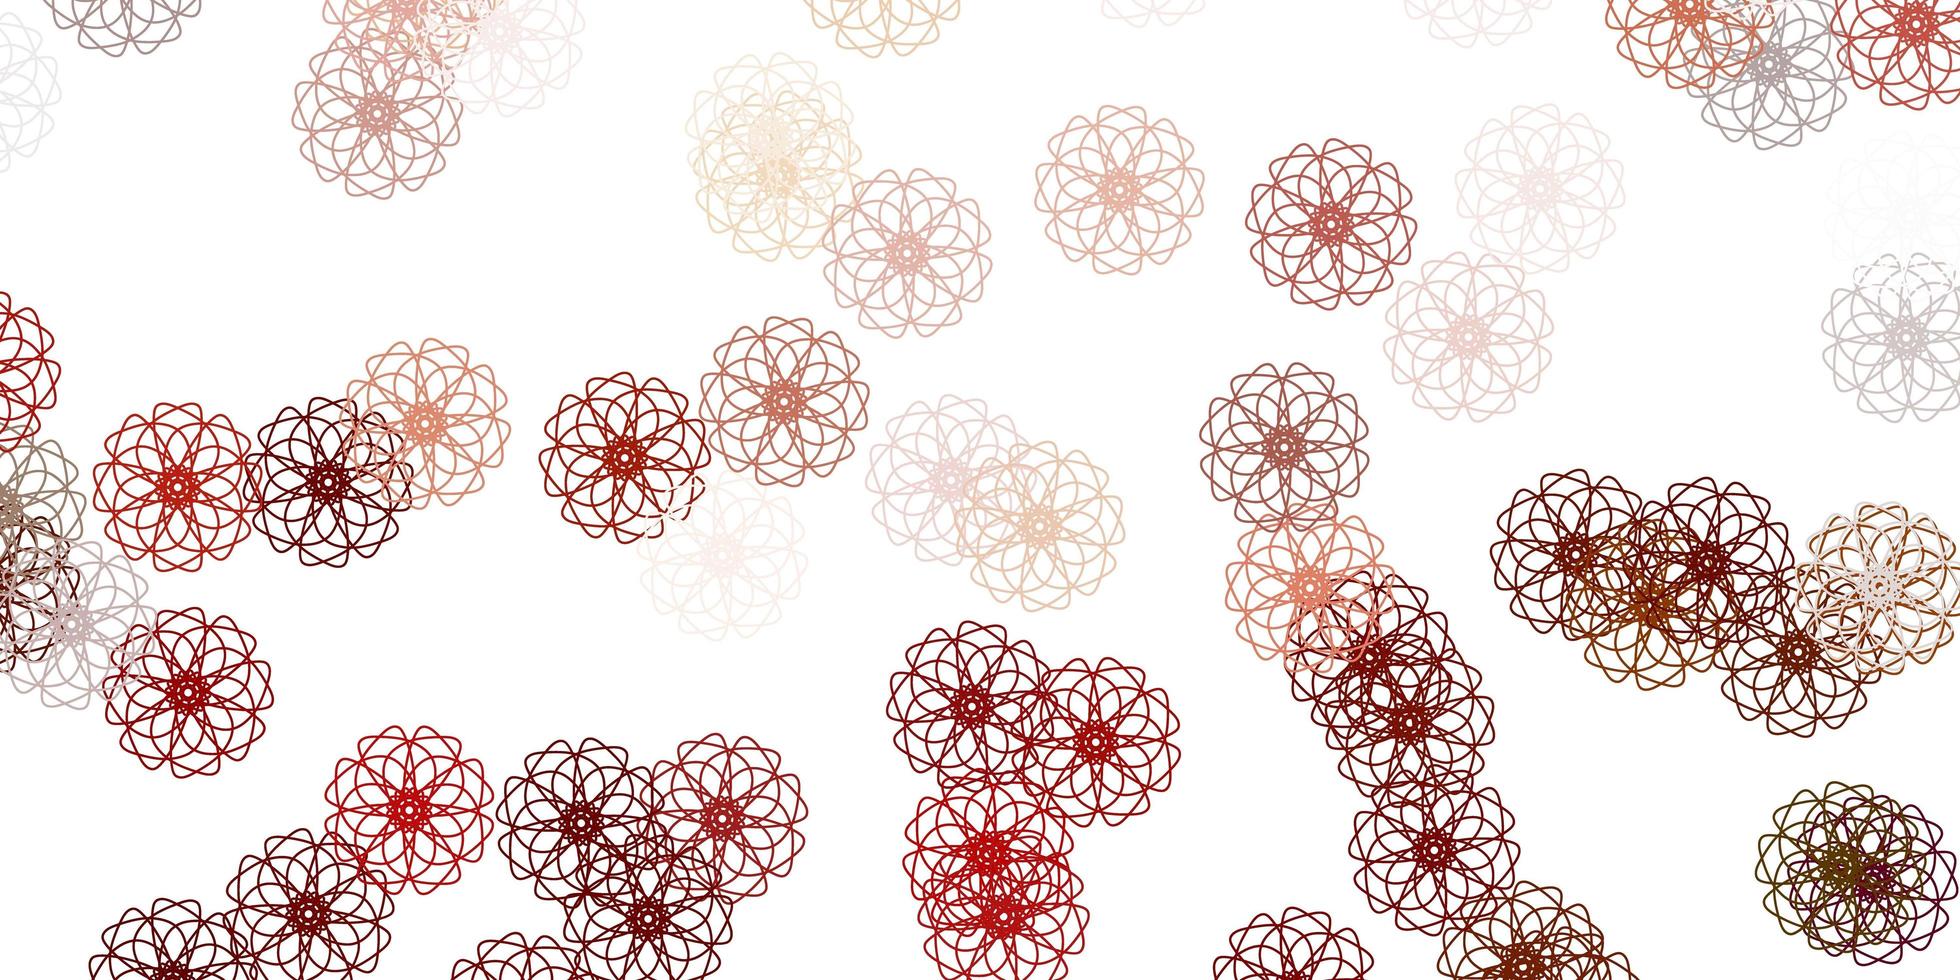 lichtoranje vector doodle sjabloon met bloemen.